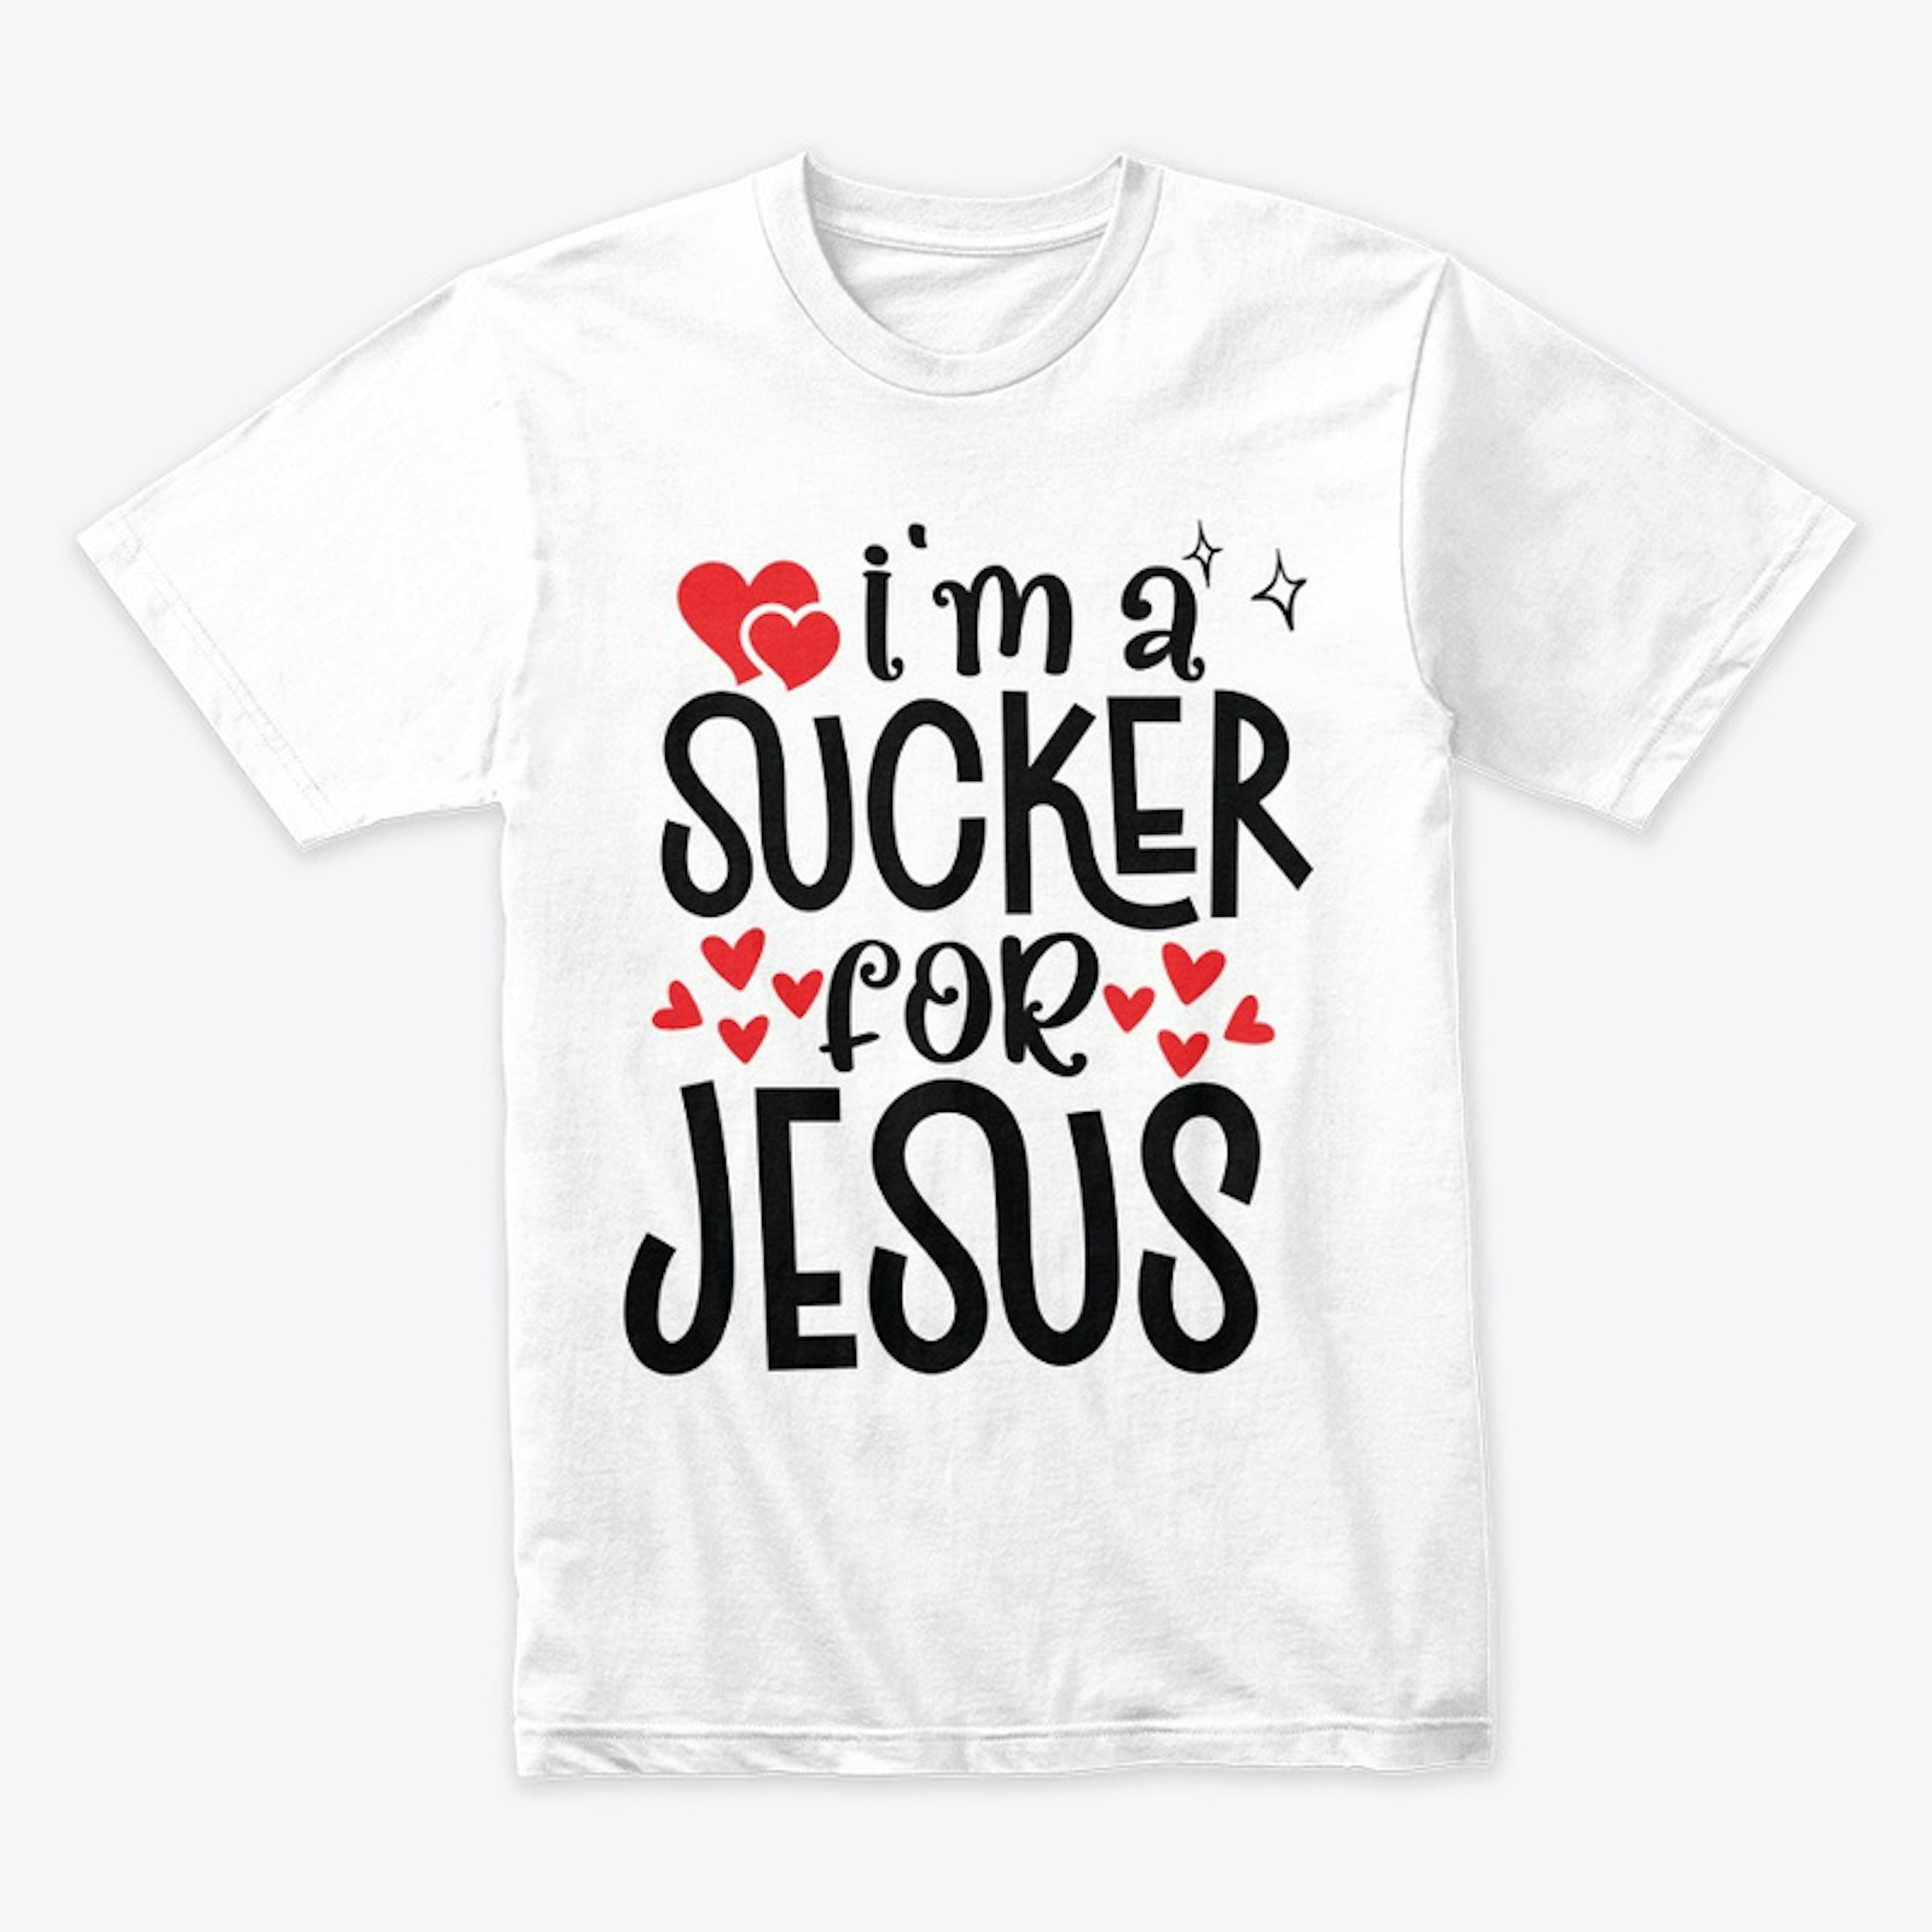 I'm a sucker for Jesus